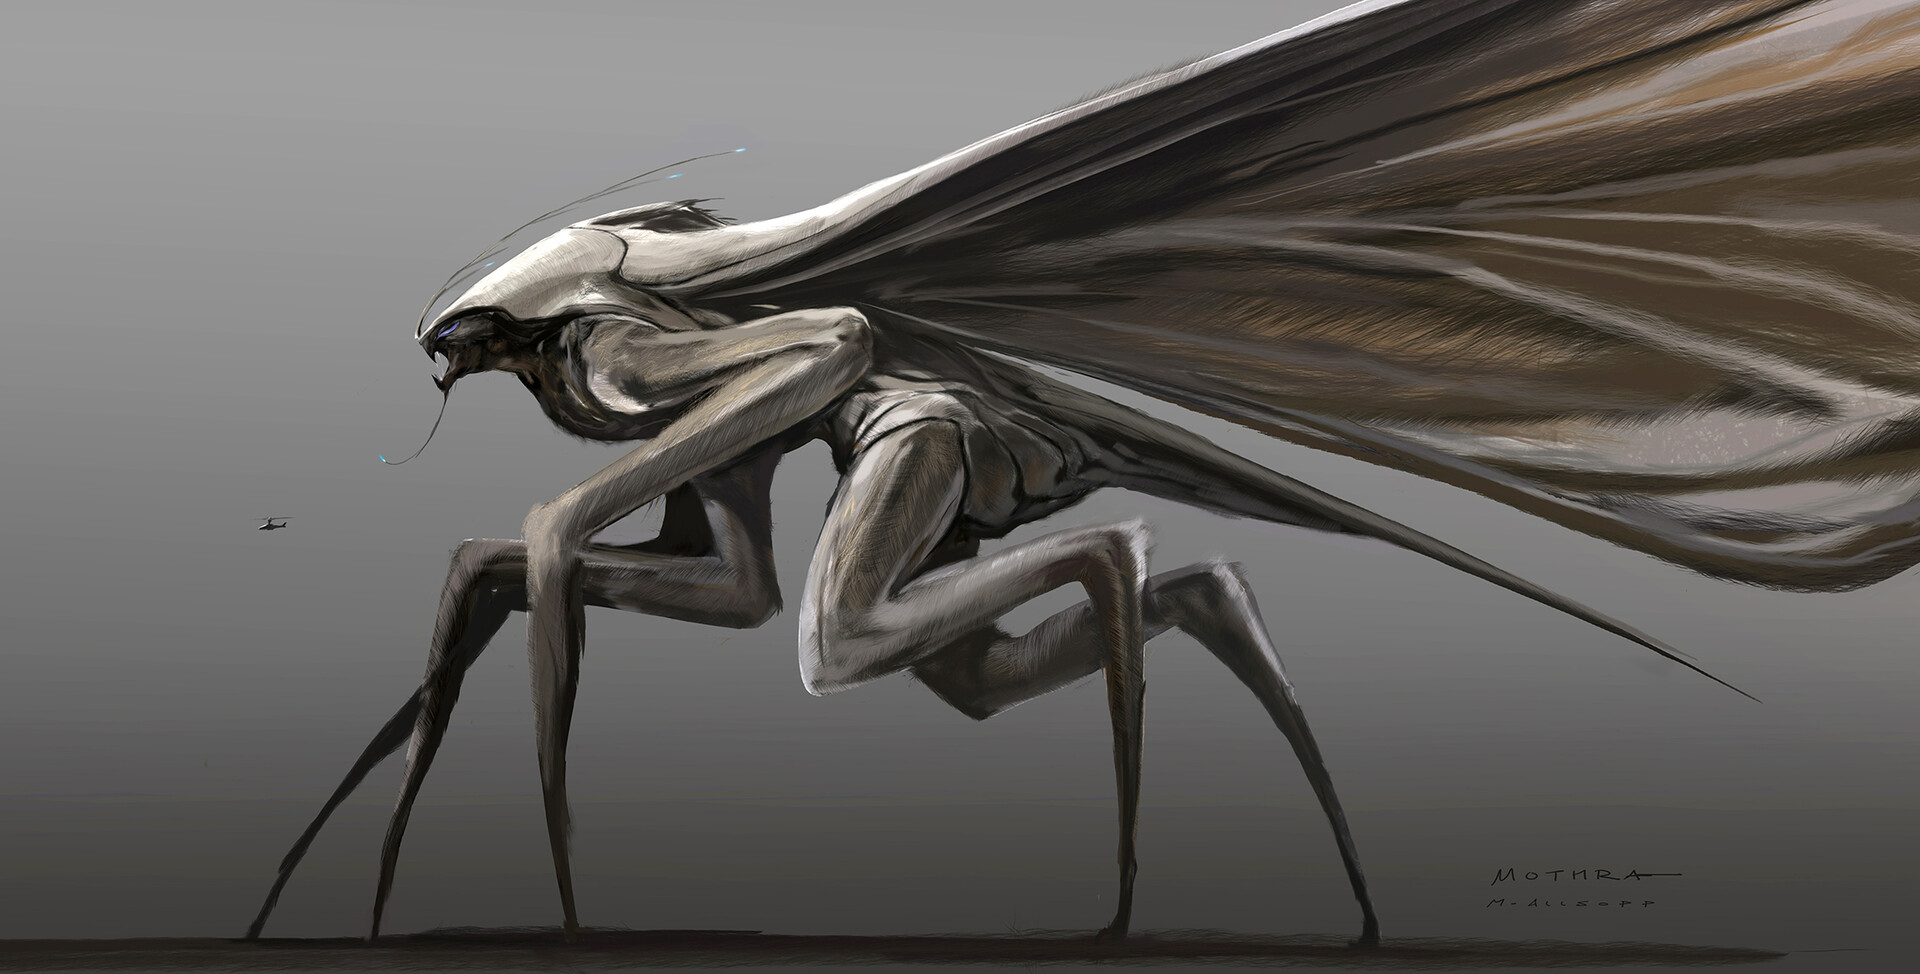 KOTM Mothra Concept Art